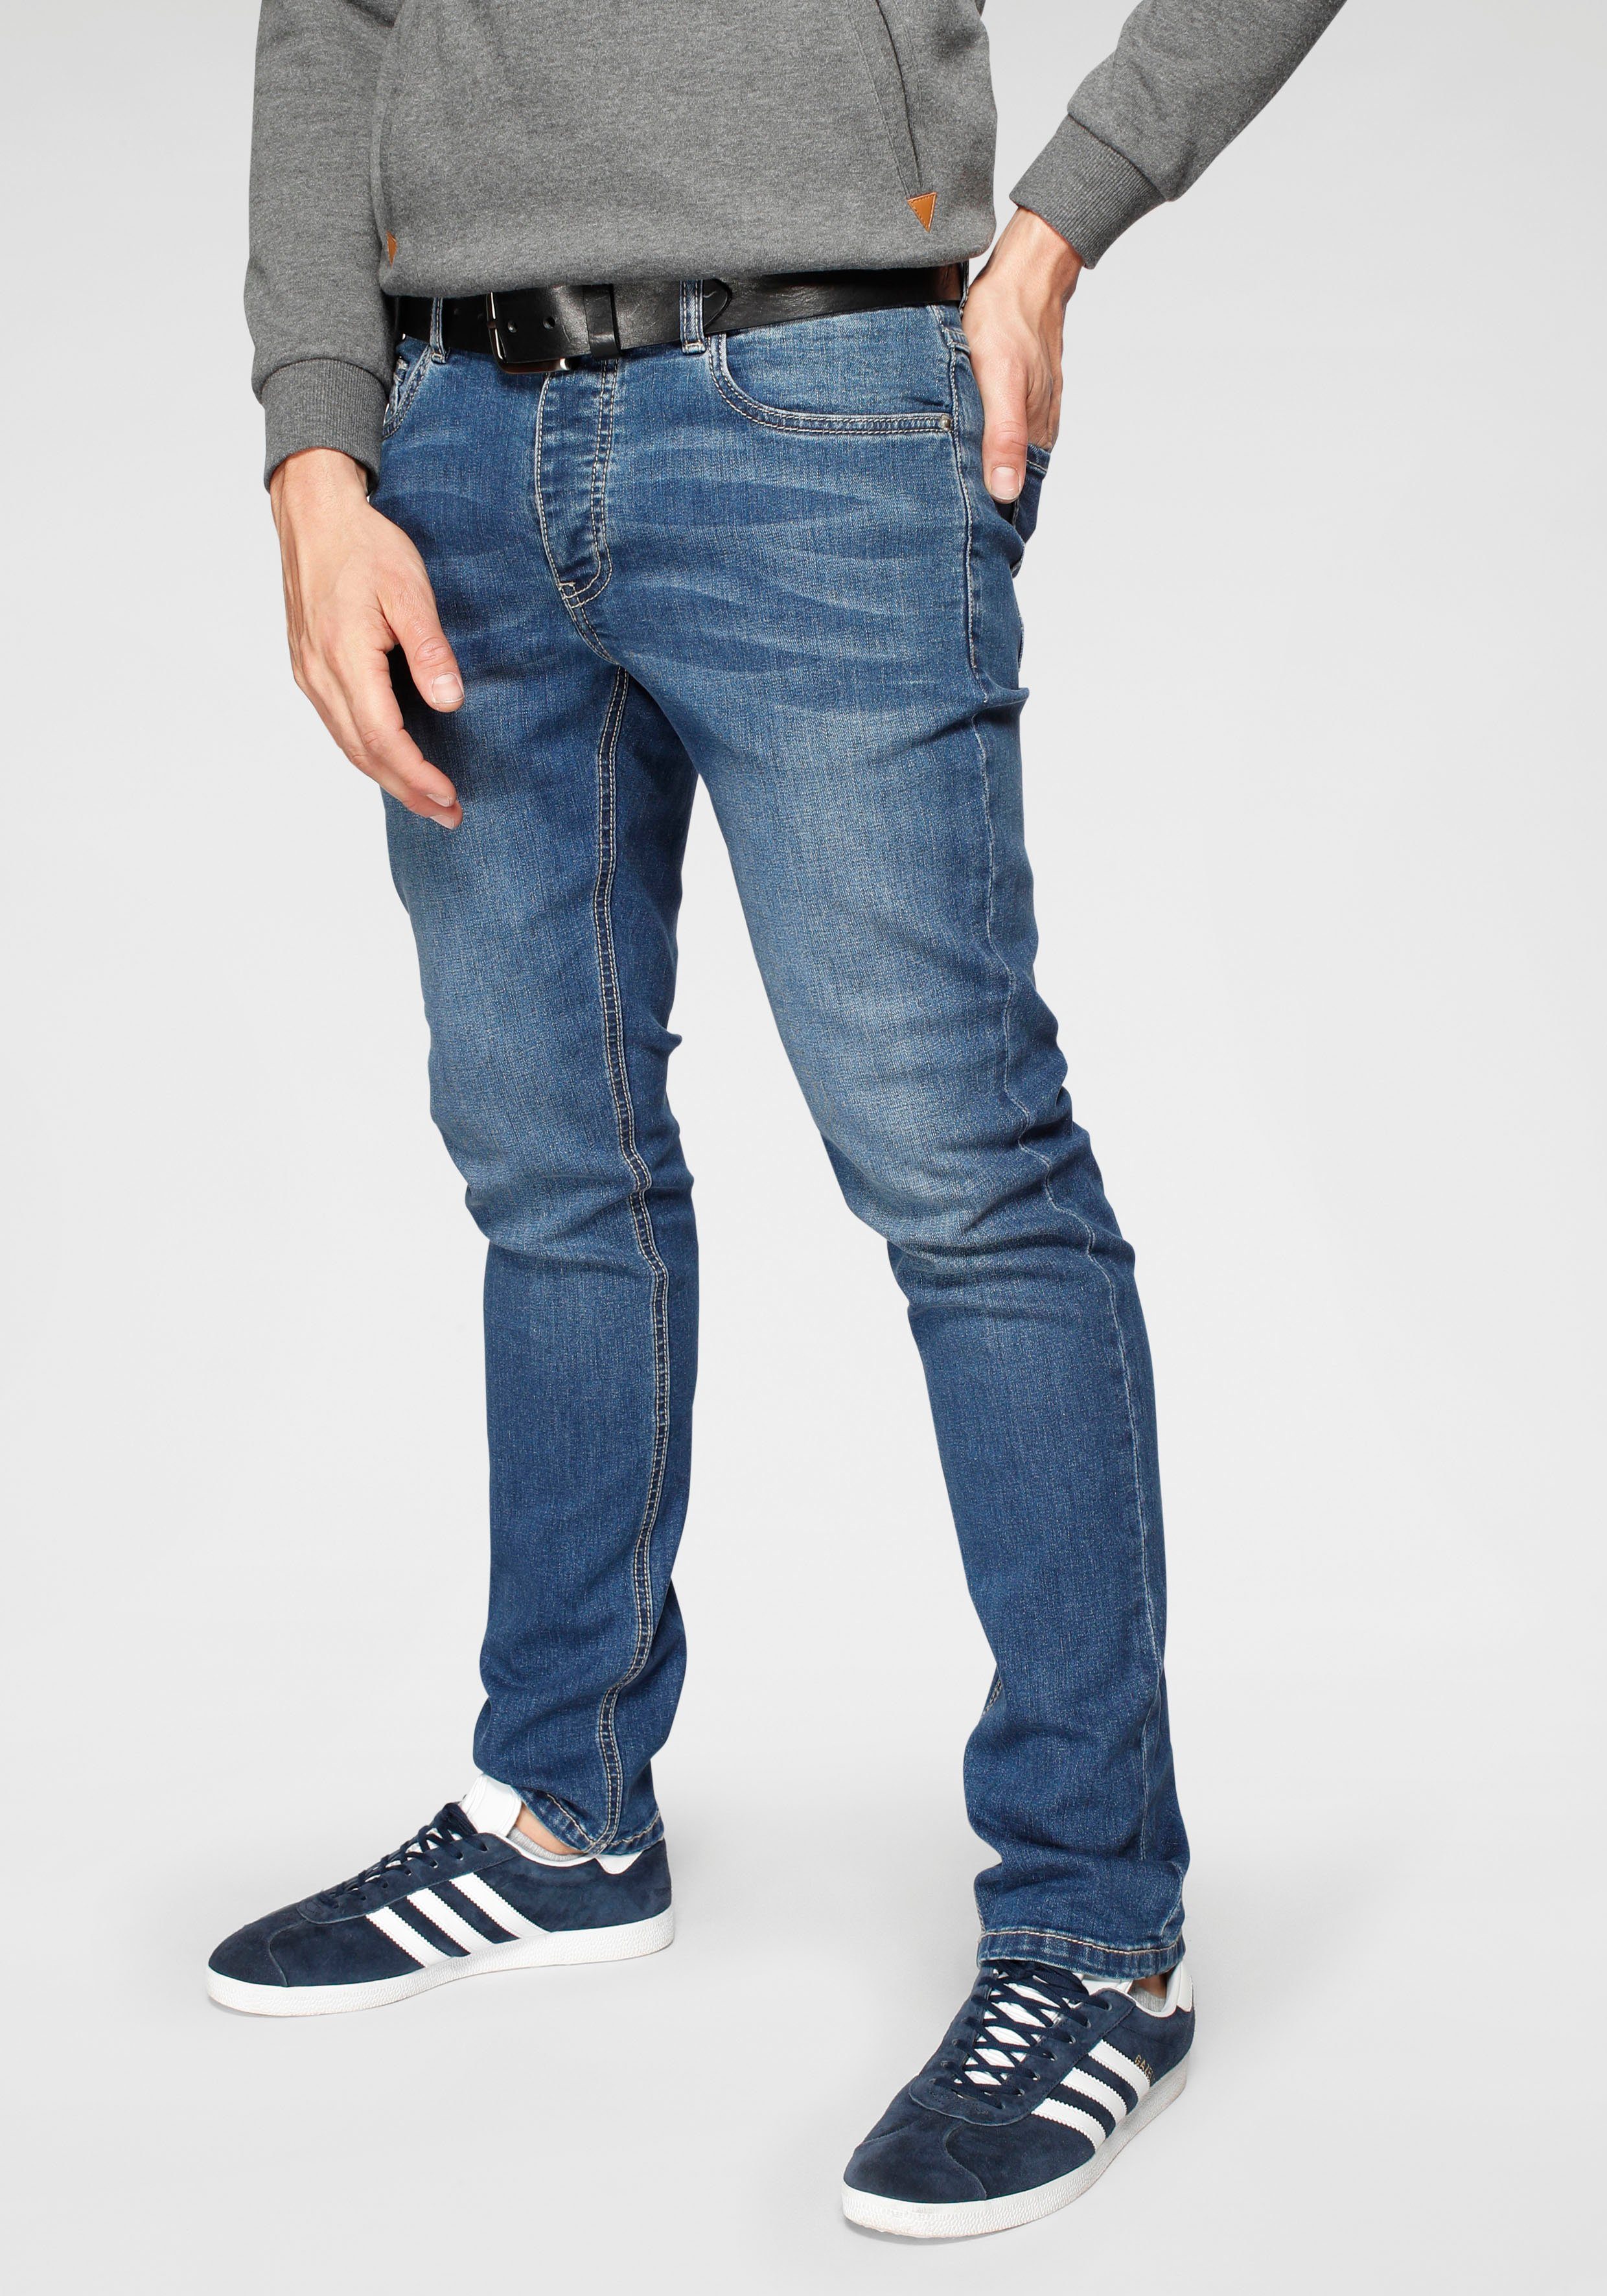 Herren Jeans mit niedrigem Bund online kaufen | OTTO